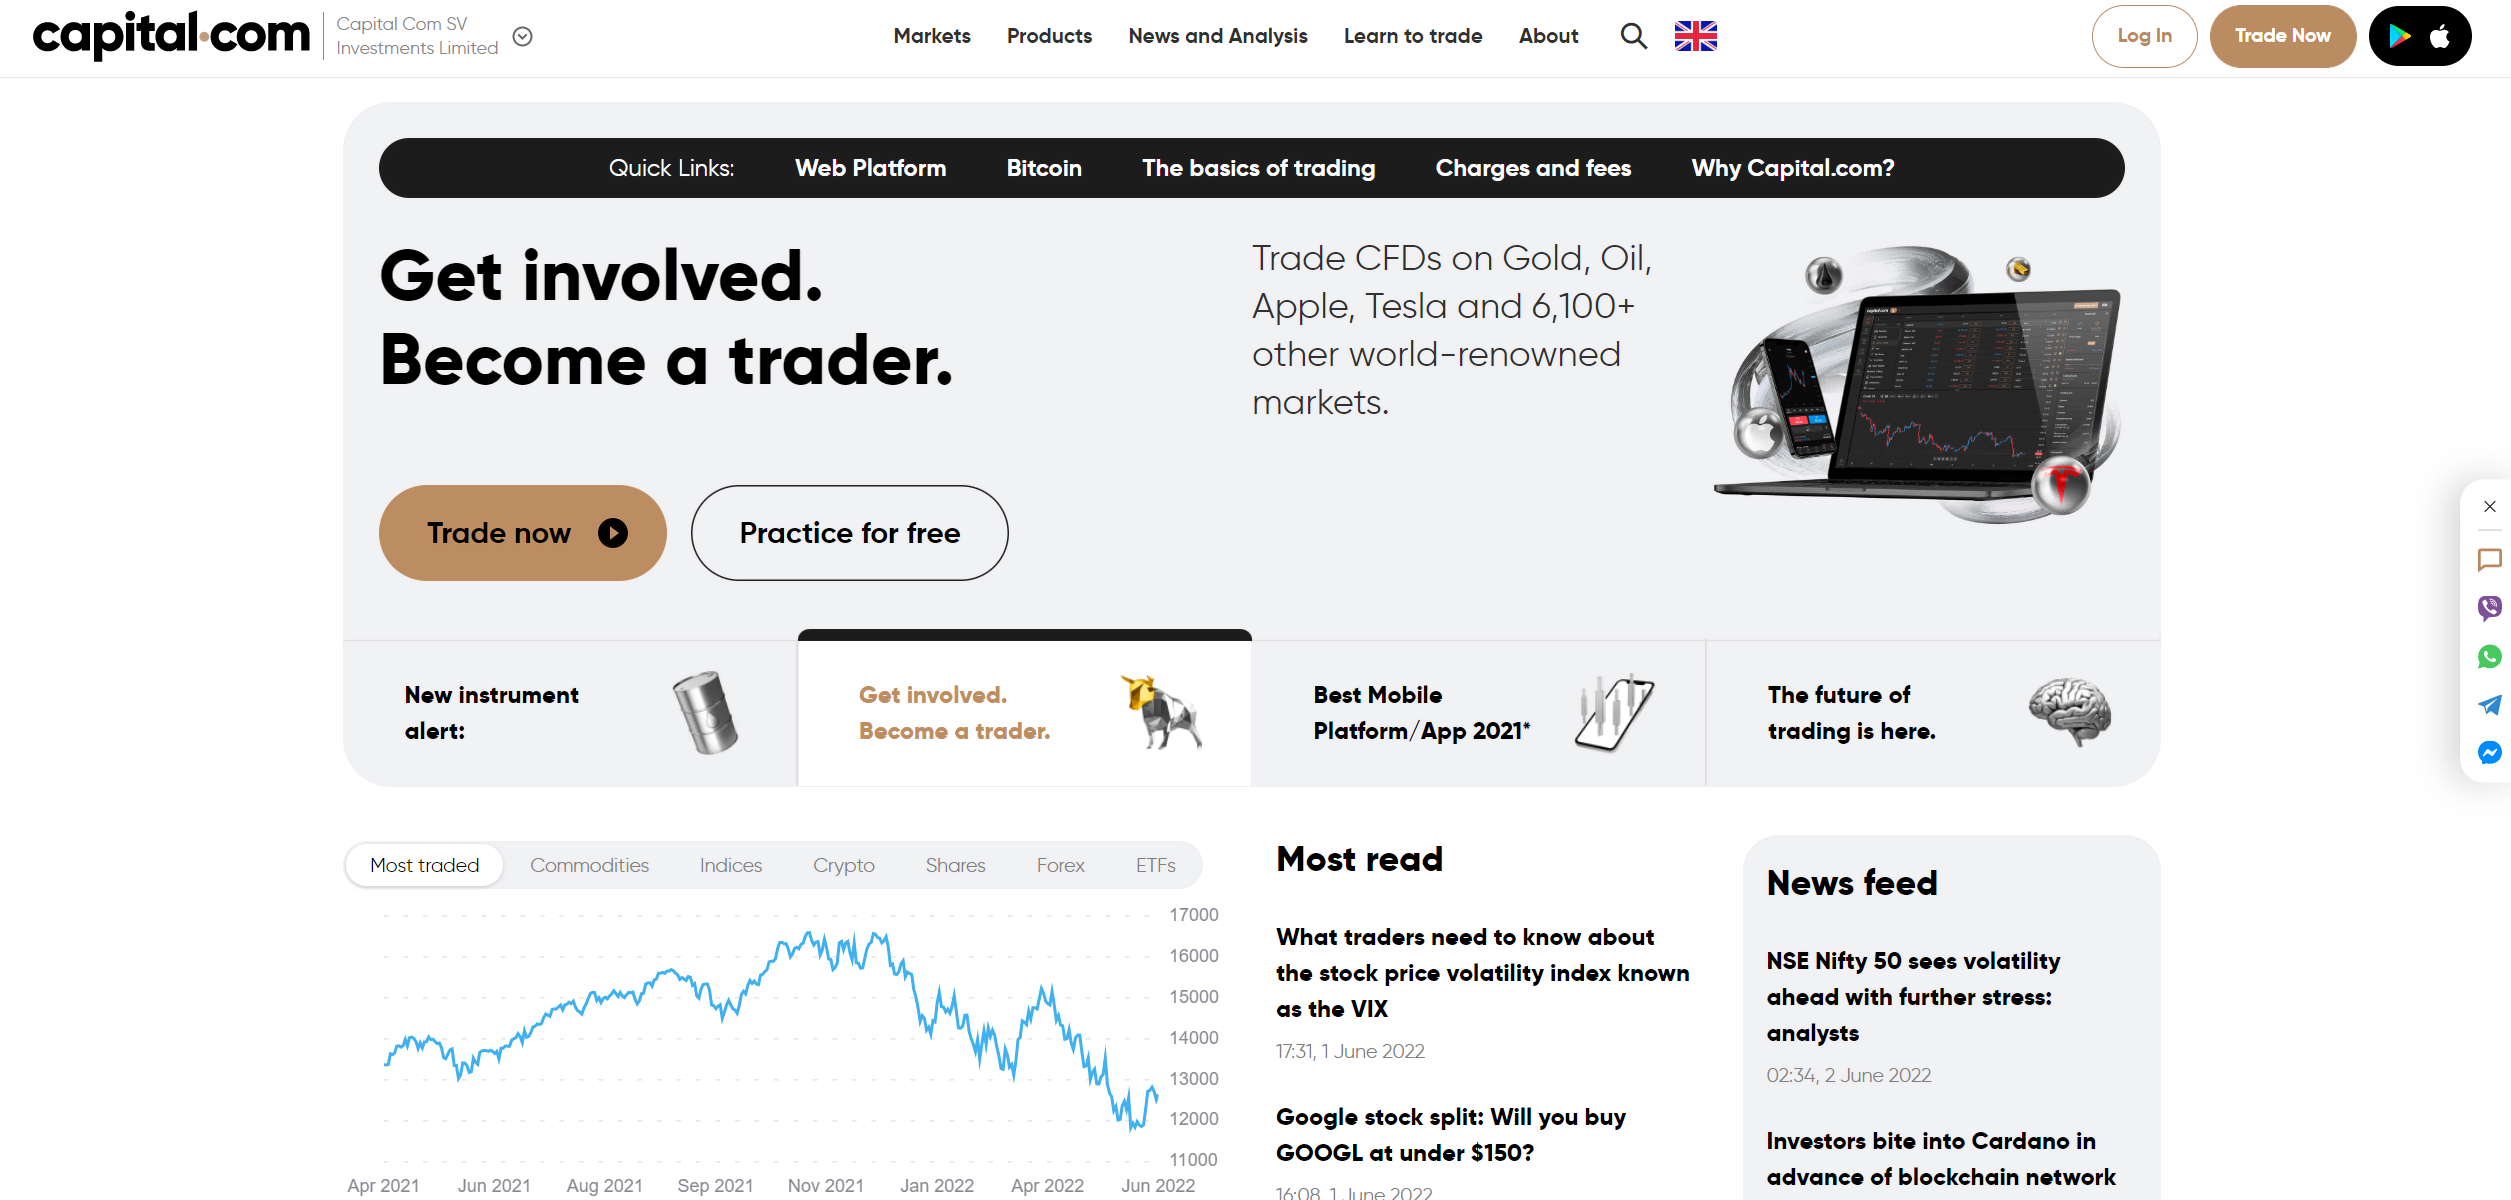 Forex brokeri Capital.com'nin resmi web sitesi